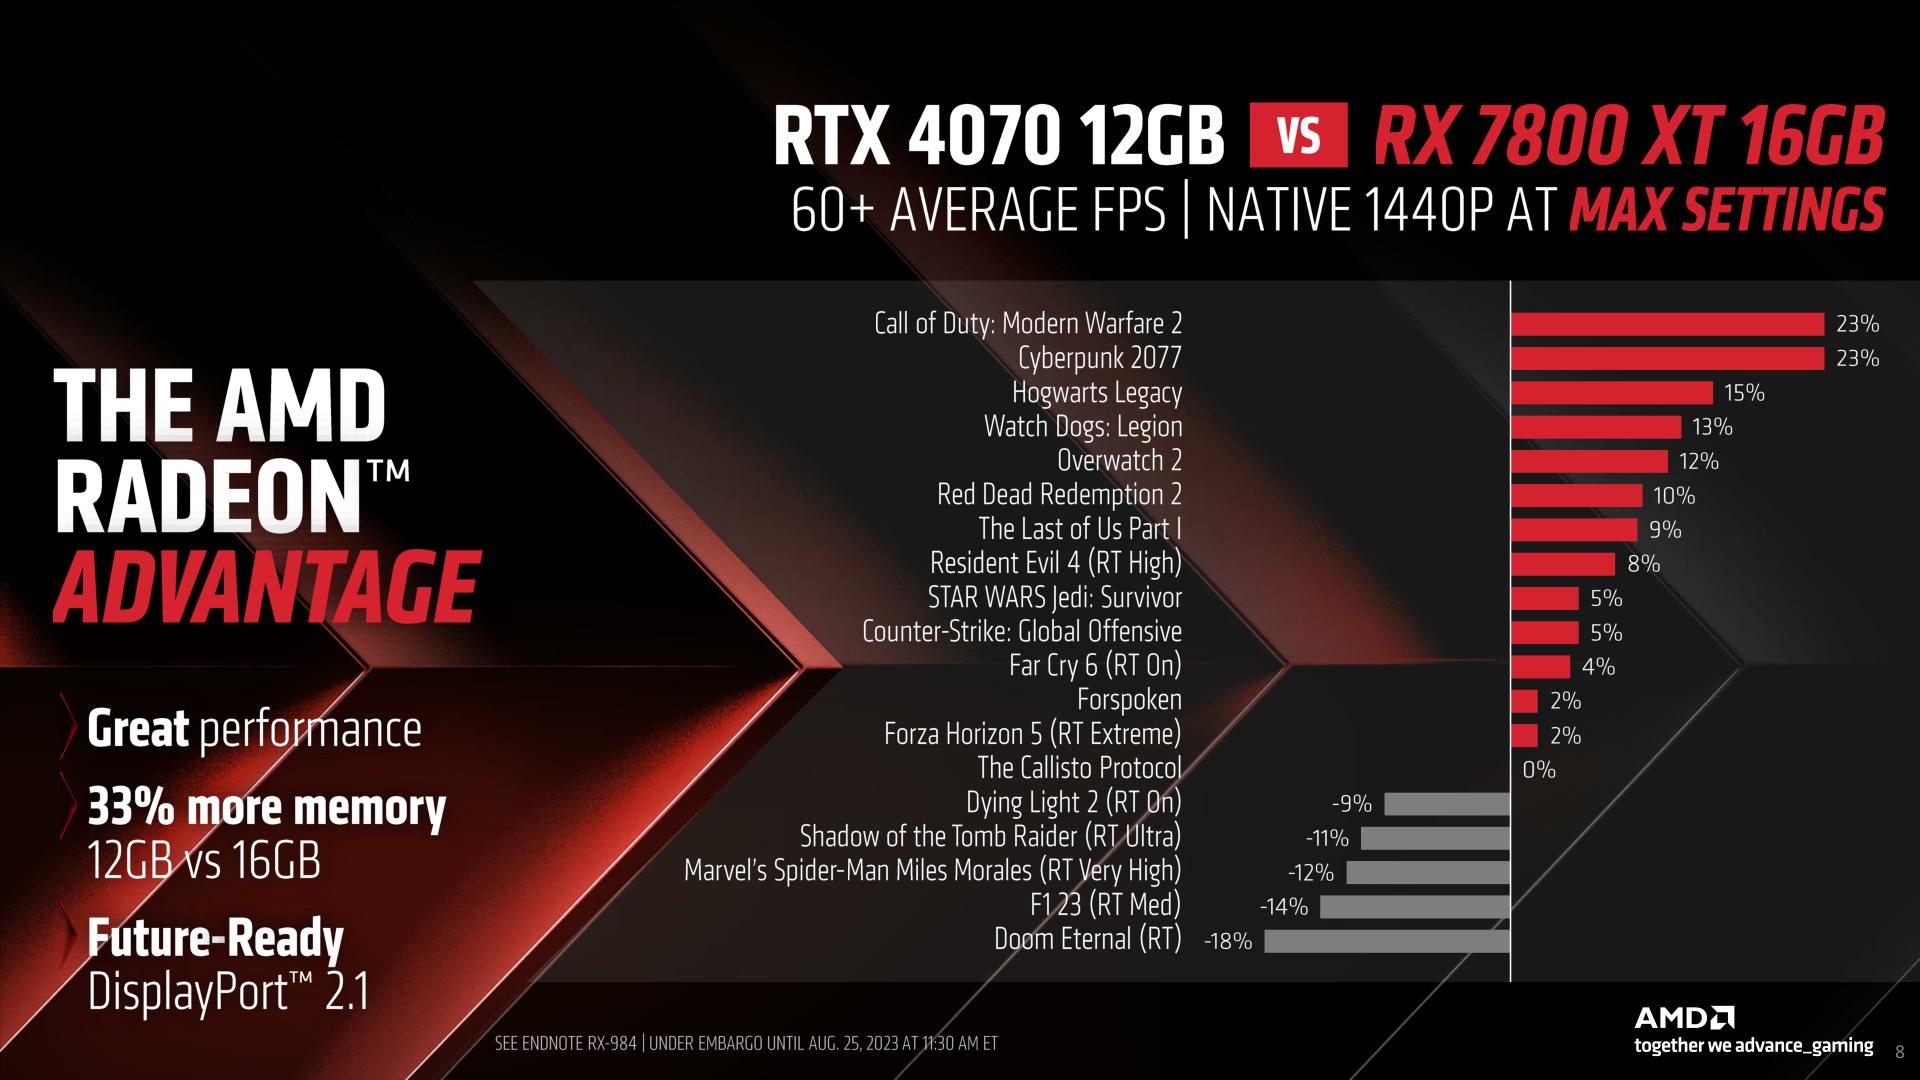 RX 7700 XT vs RTX 4070 - do they compare? - PC Guide